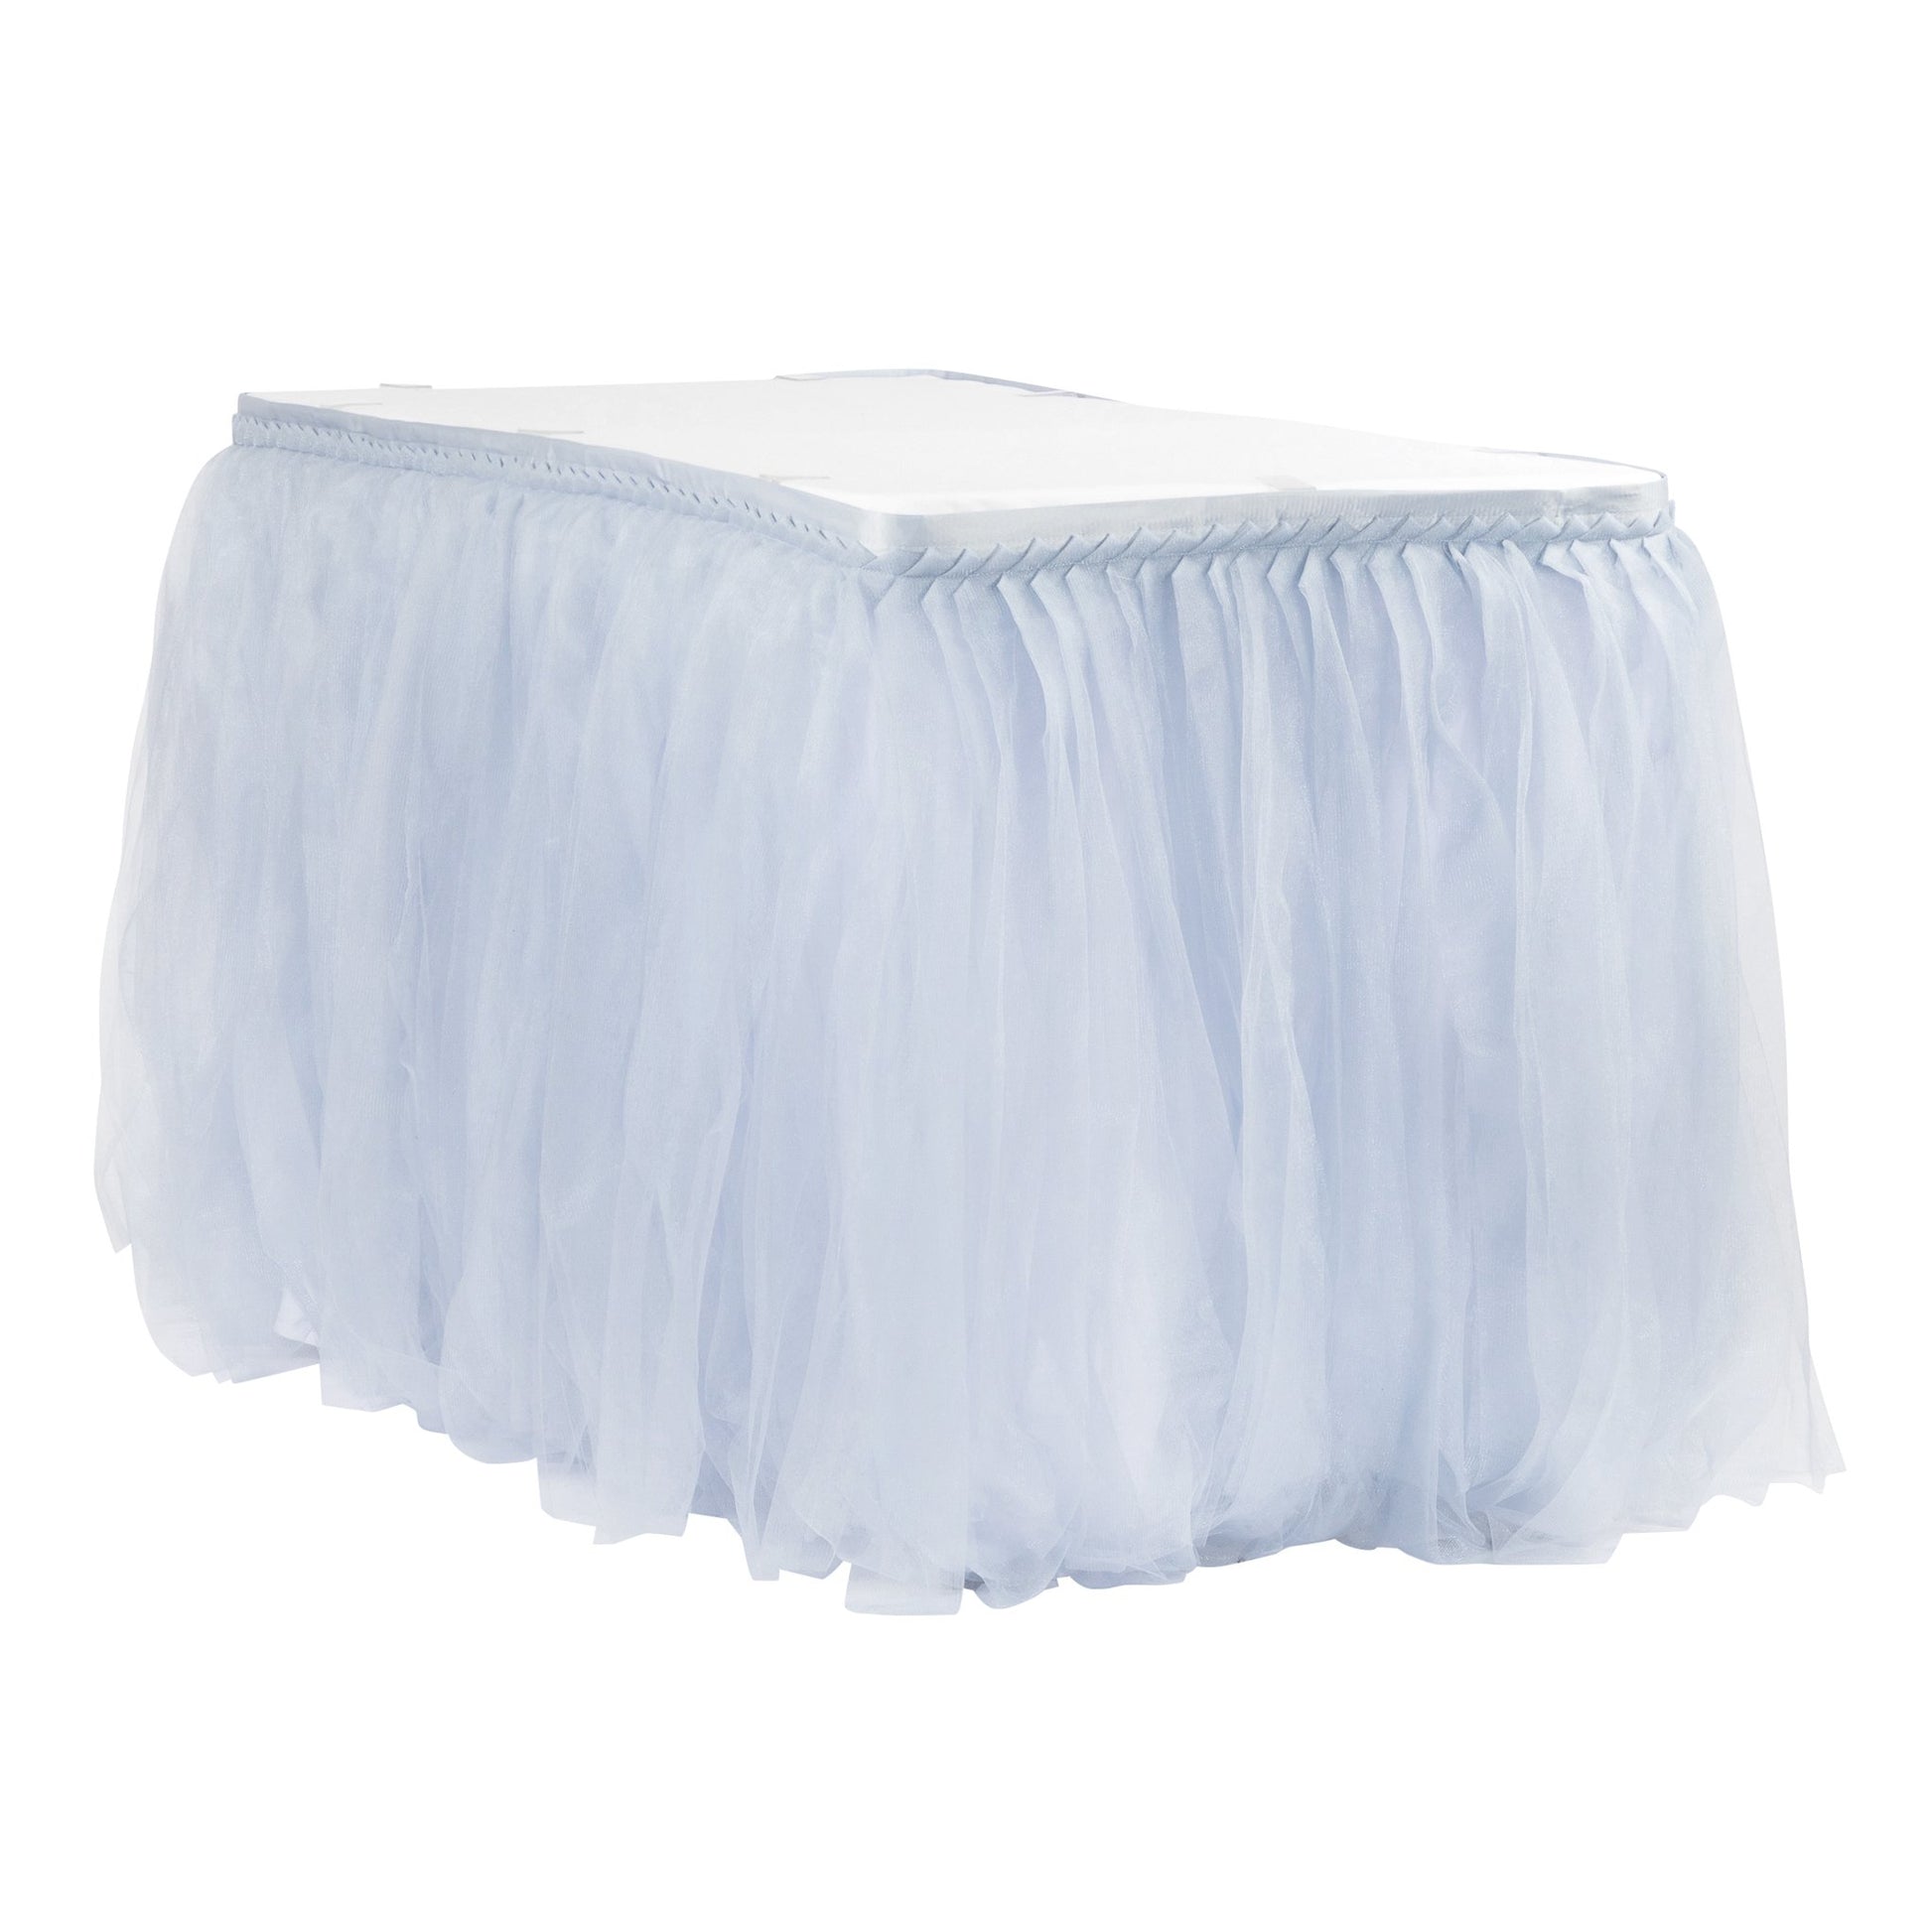 Tulle Tutu 14ft Table Skirt - Dusty Blue - CV Linens